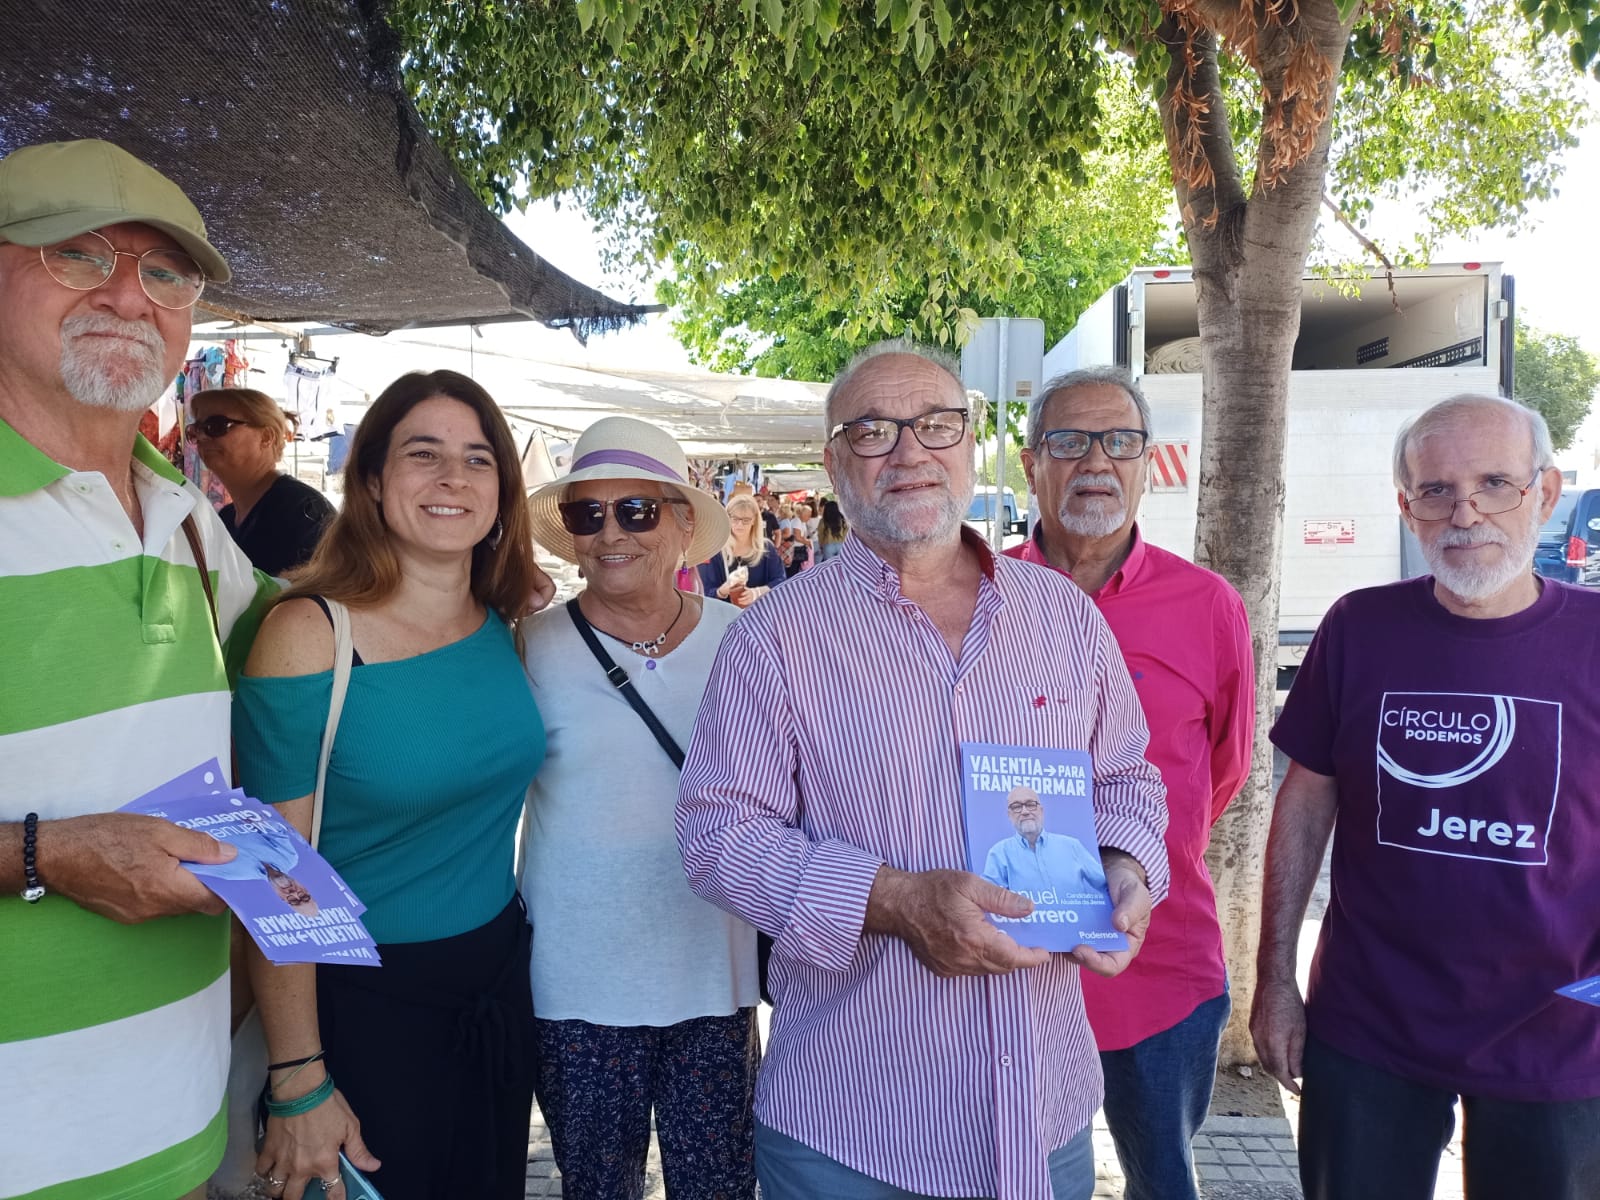 Manolo Guerrero, candidato de Podemos a la Alcaldía de Jerez, que quiere convertir plazas de abastos en supermercados públicos.